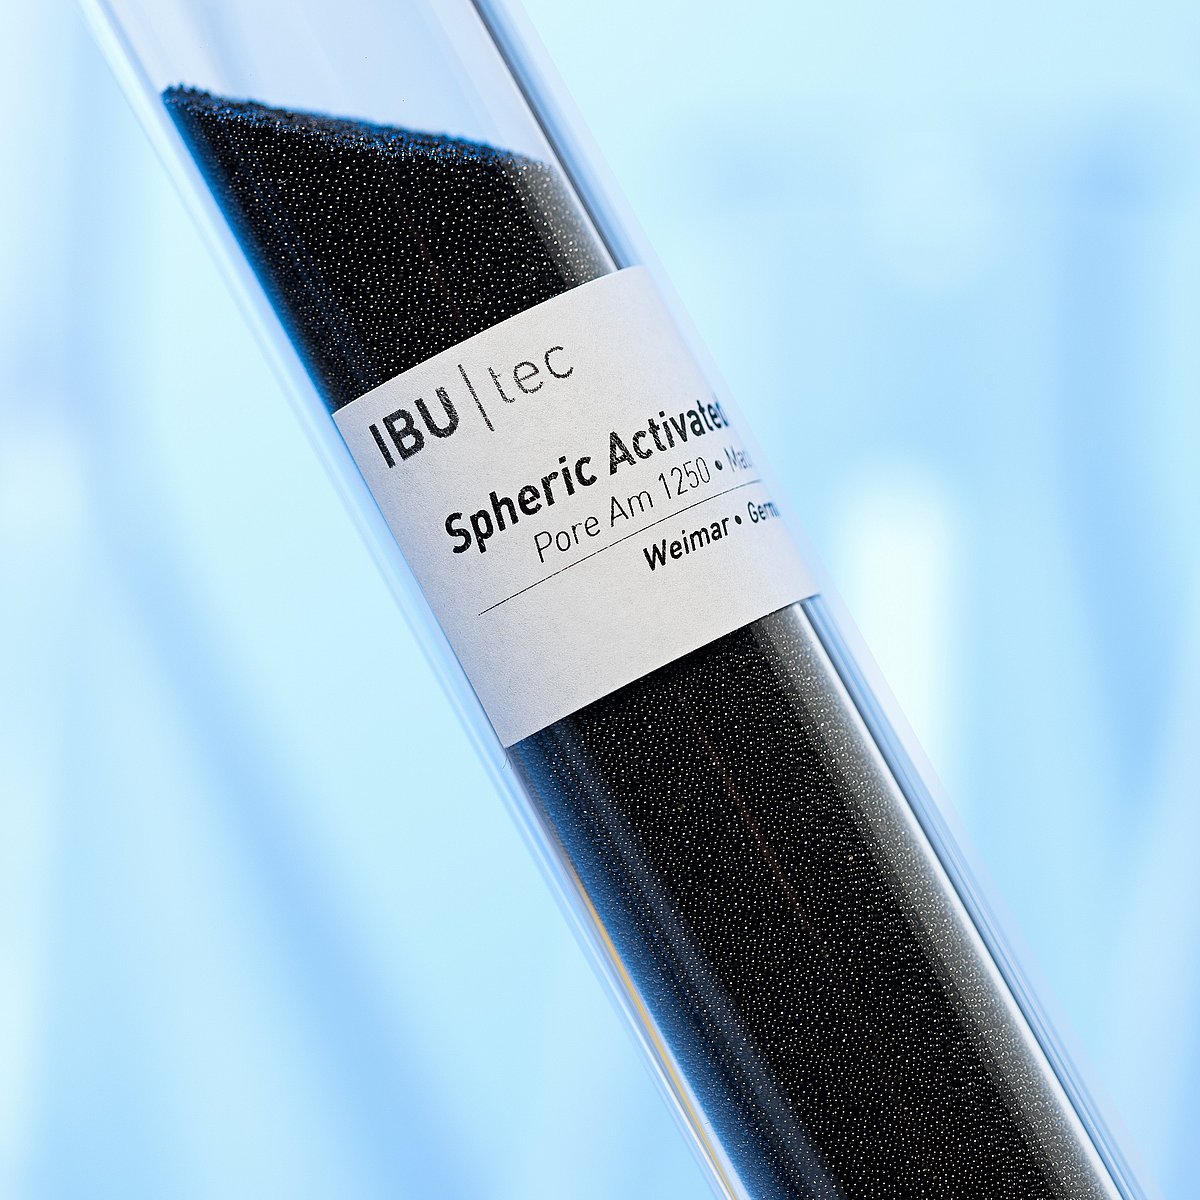 Reagenzglas mit Aktivkohle, einer Kugelaktivkohle aus der Entwicklung und Produktion bei IBU-tec